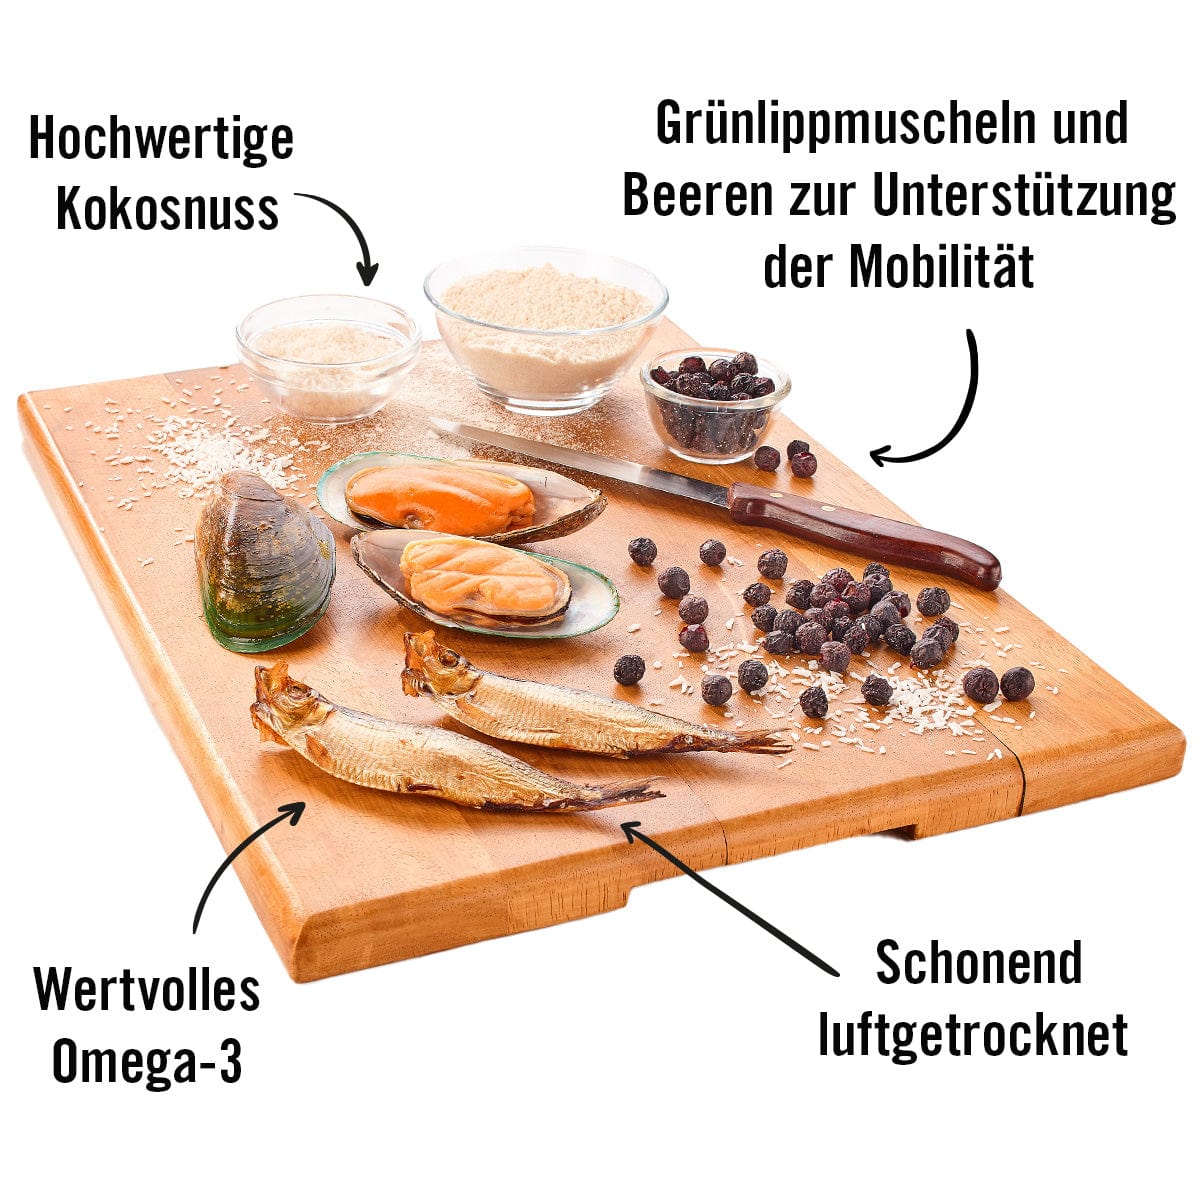 Holzbrett mit den Hauptzutaten von Hüftschwung: Grünlippmuschel, Beeren, Kokosnuss und Sprotte mit Omega 3